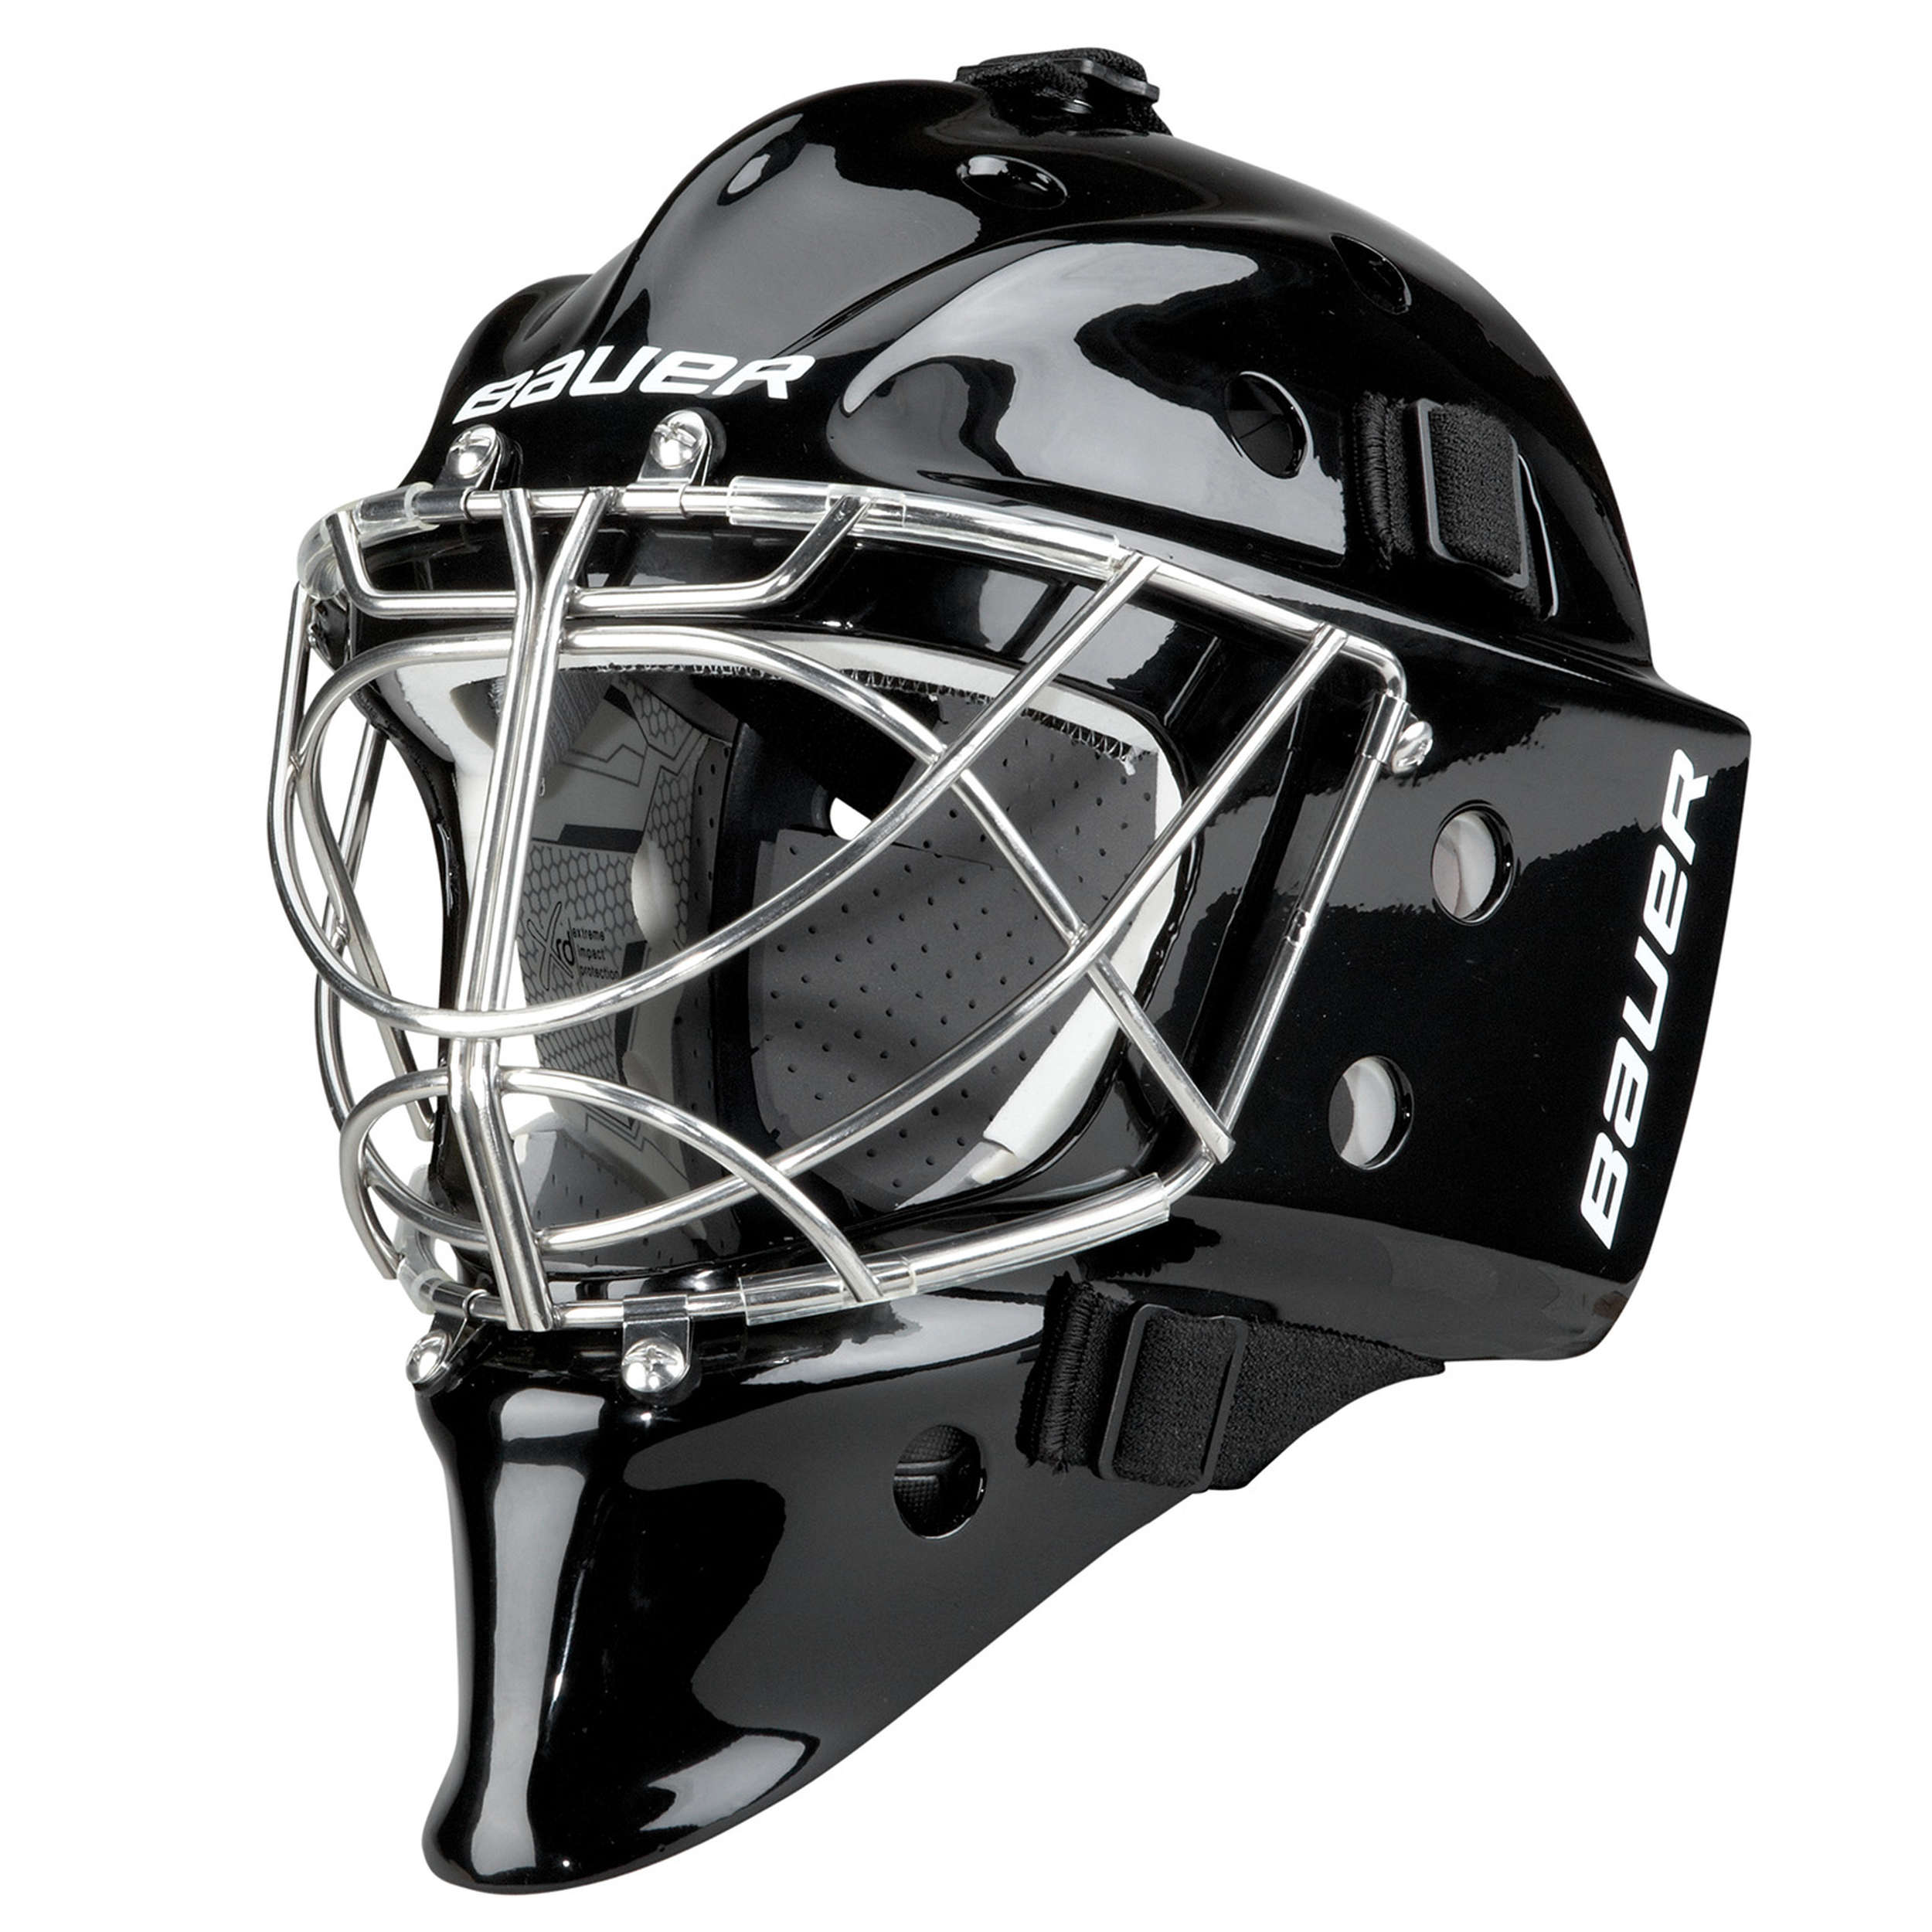 Вратарь шлем купить. Бауэр 950 вратарский шлем. Вратарский шлем хоккейный Bauer 950. Хоккейный шлем для вратаря Бауэр. Шлем хоккейный вратарский черный Bauer.